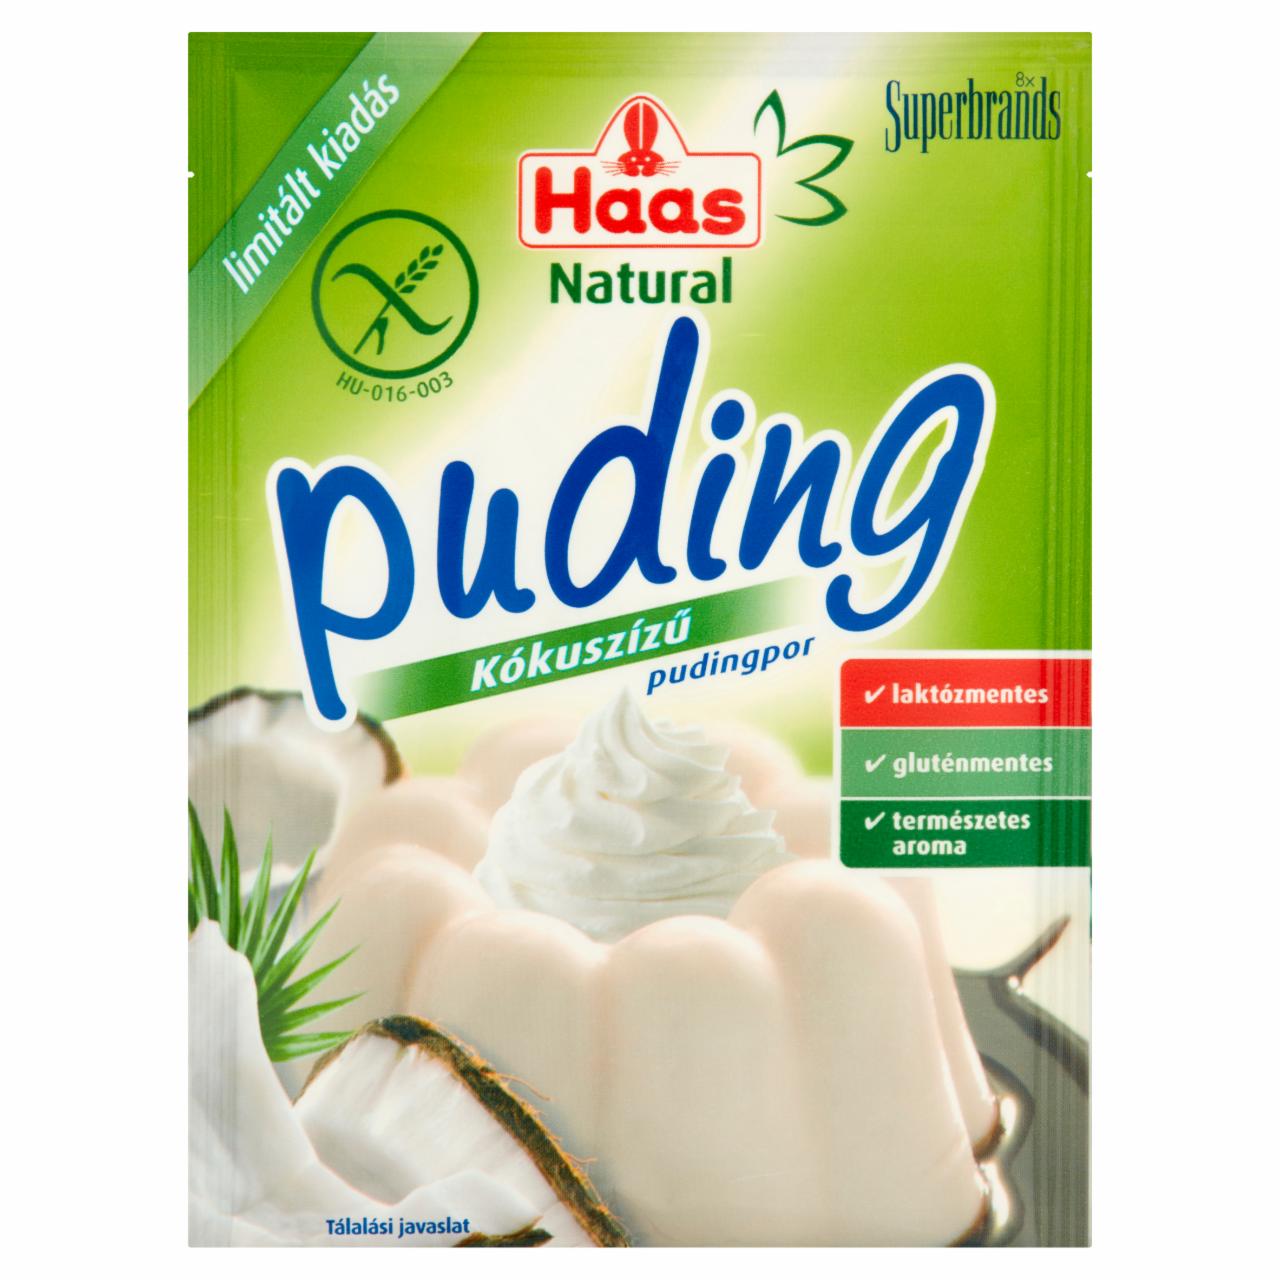 Képek - Haas Natural kókuszízű pudingpor 40 g